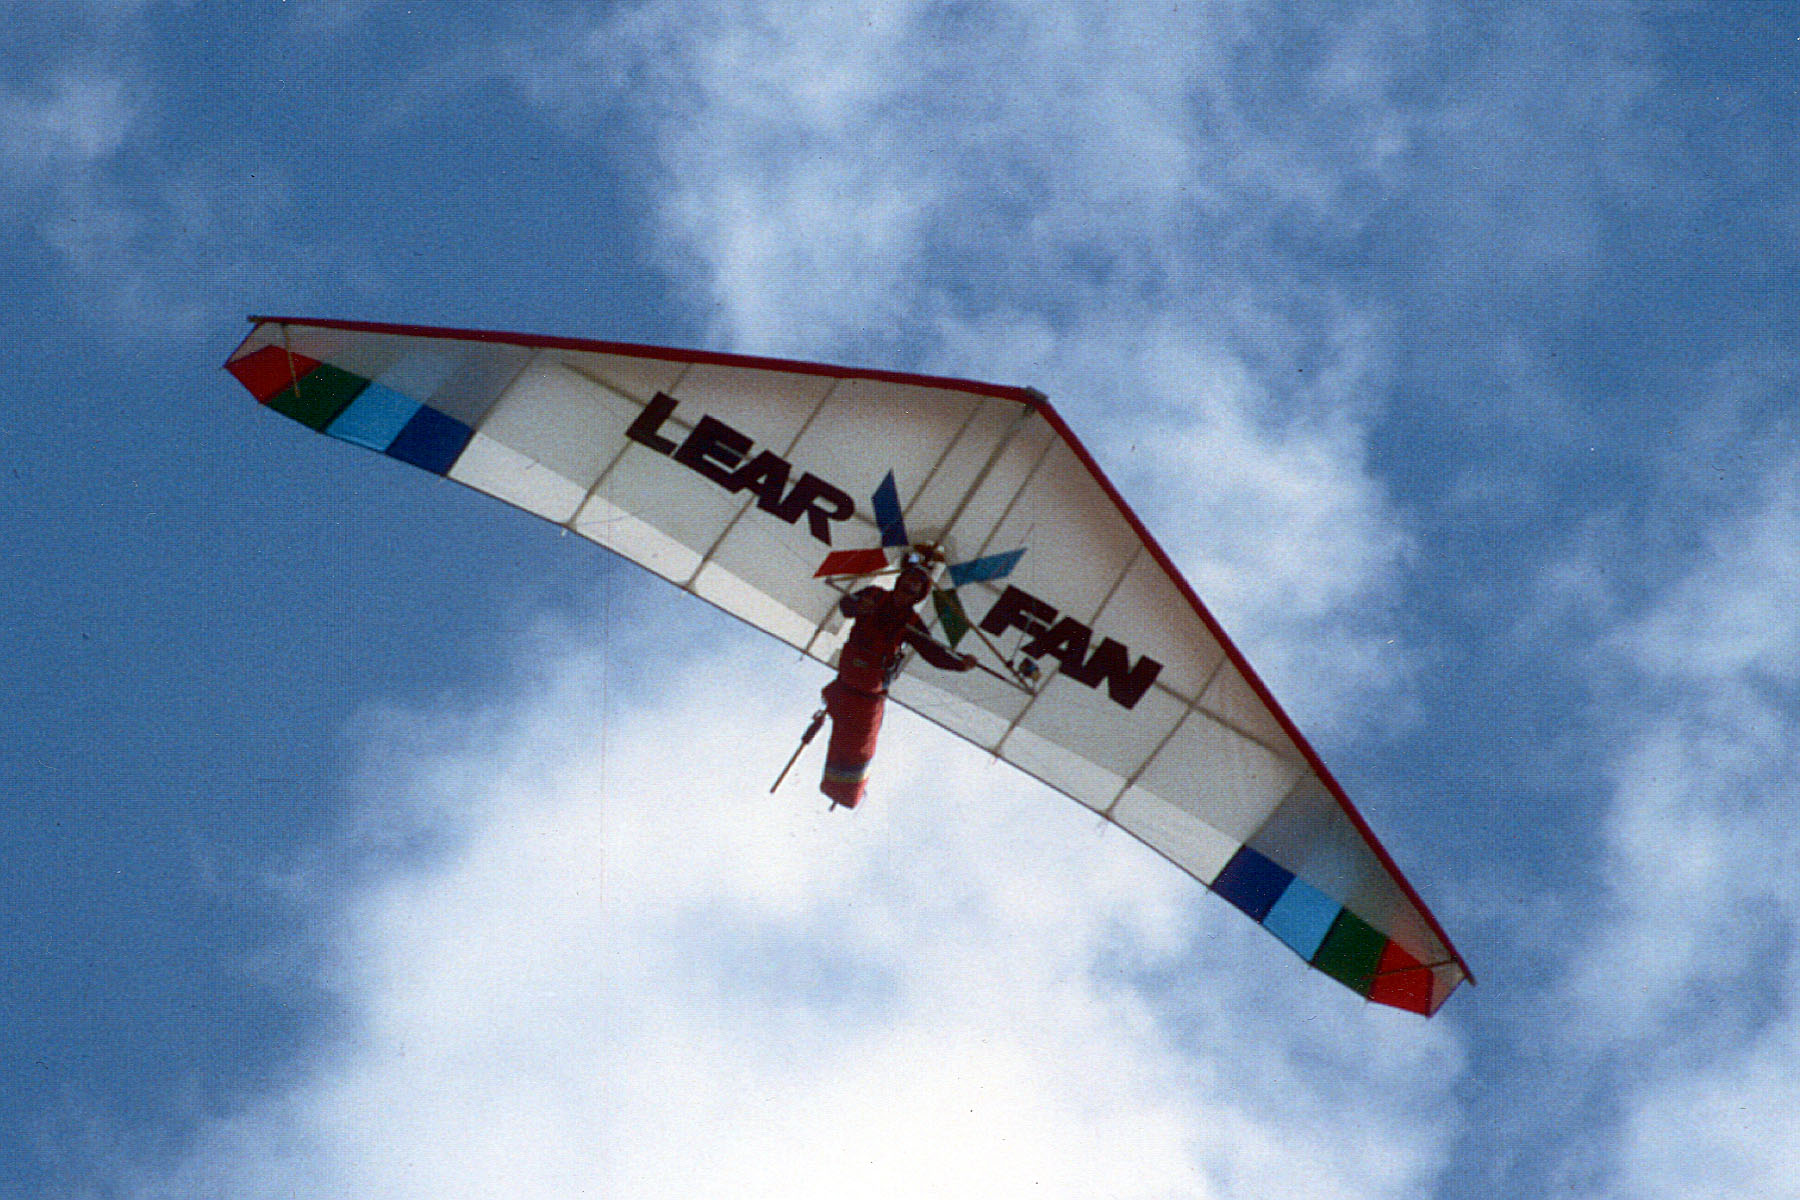 Lear Fan Glider in air